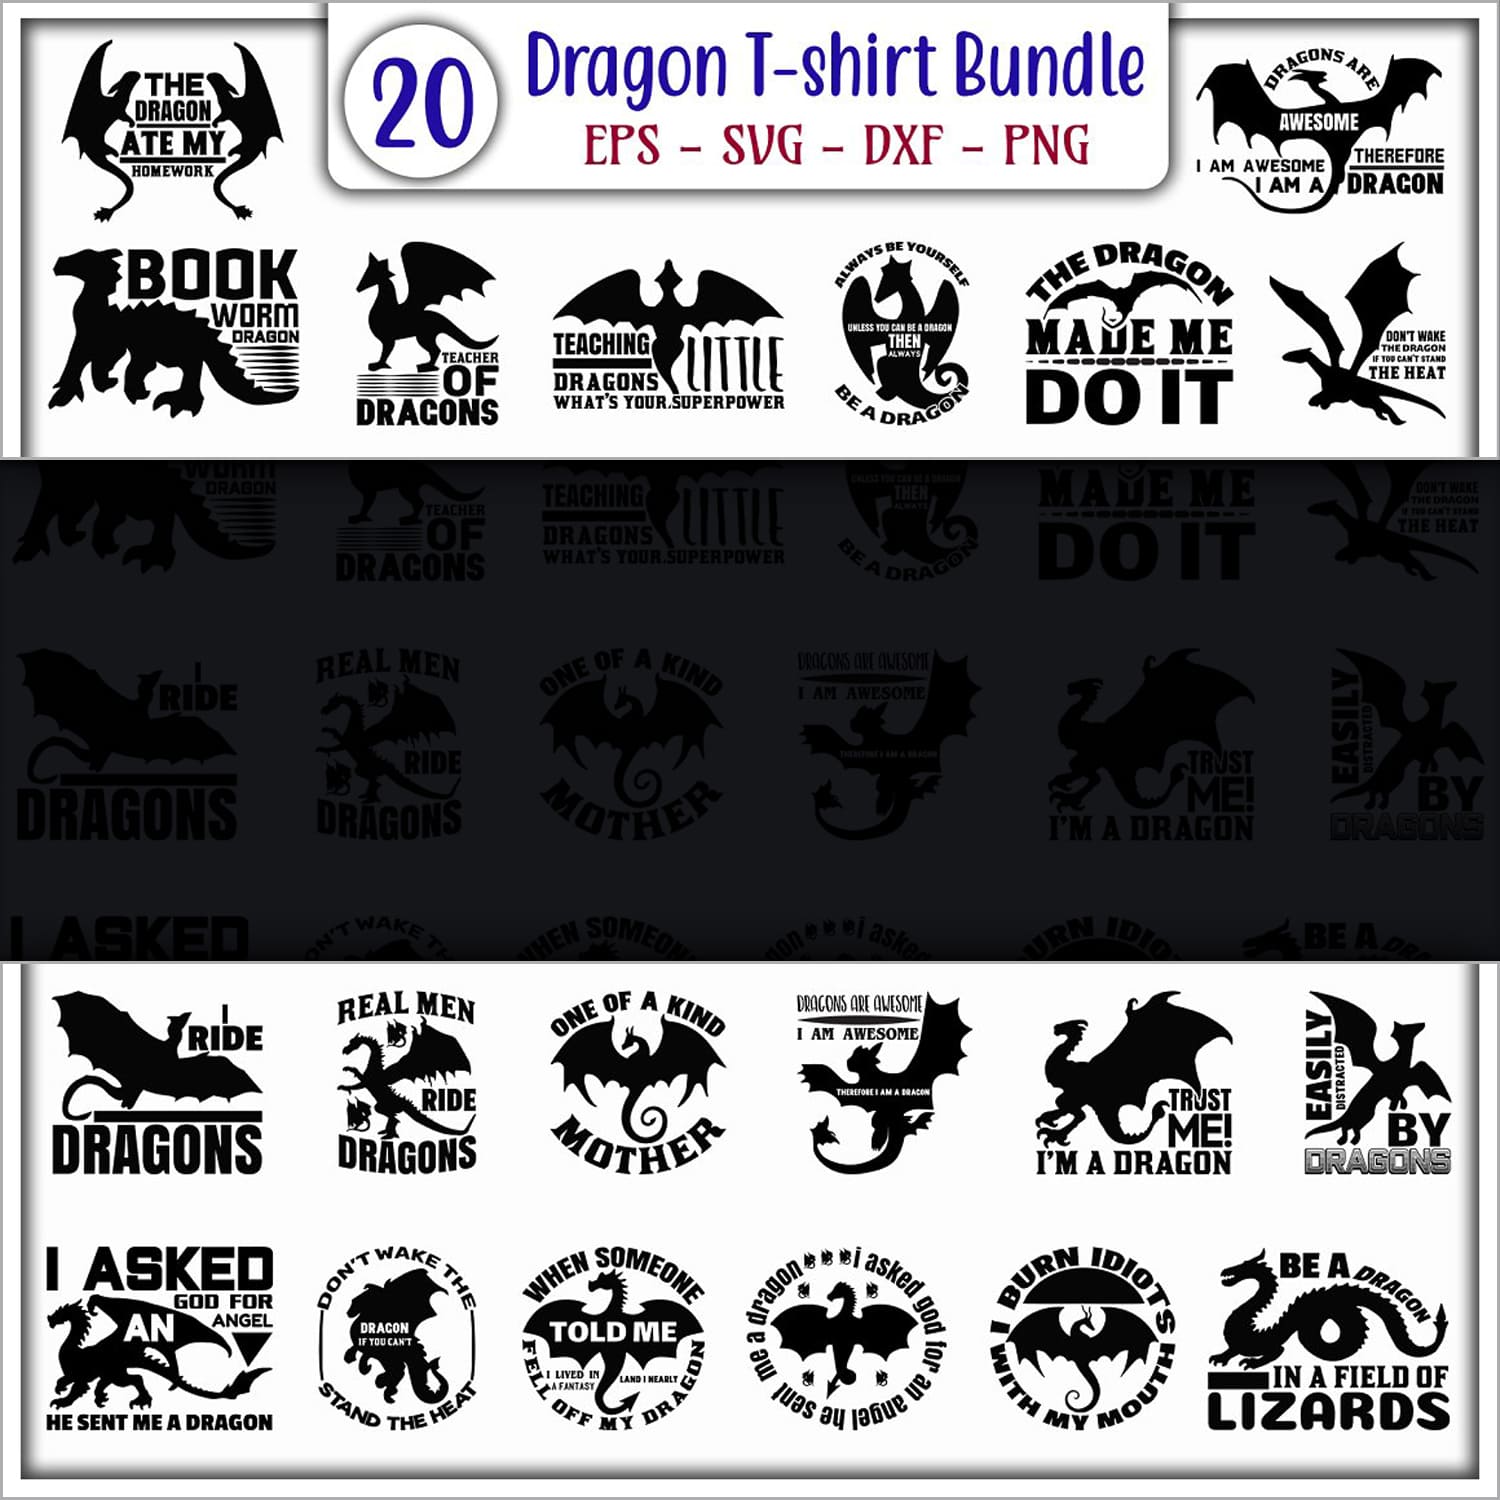 Dragon T-shirt Design Bundle Cover.